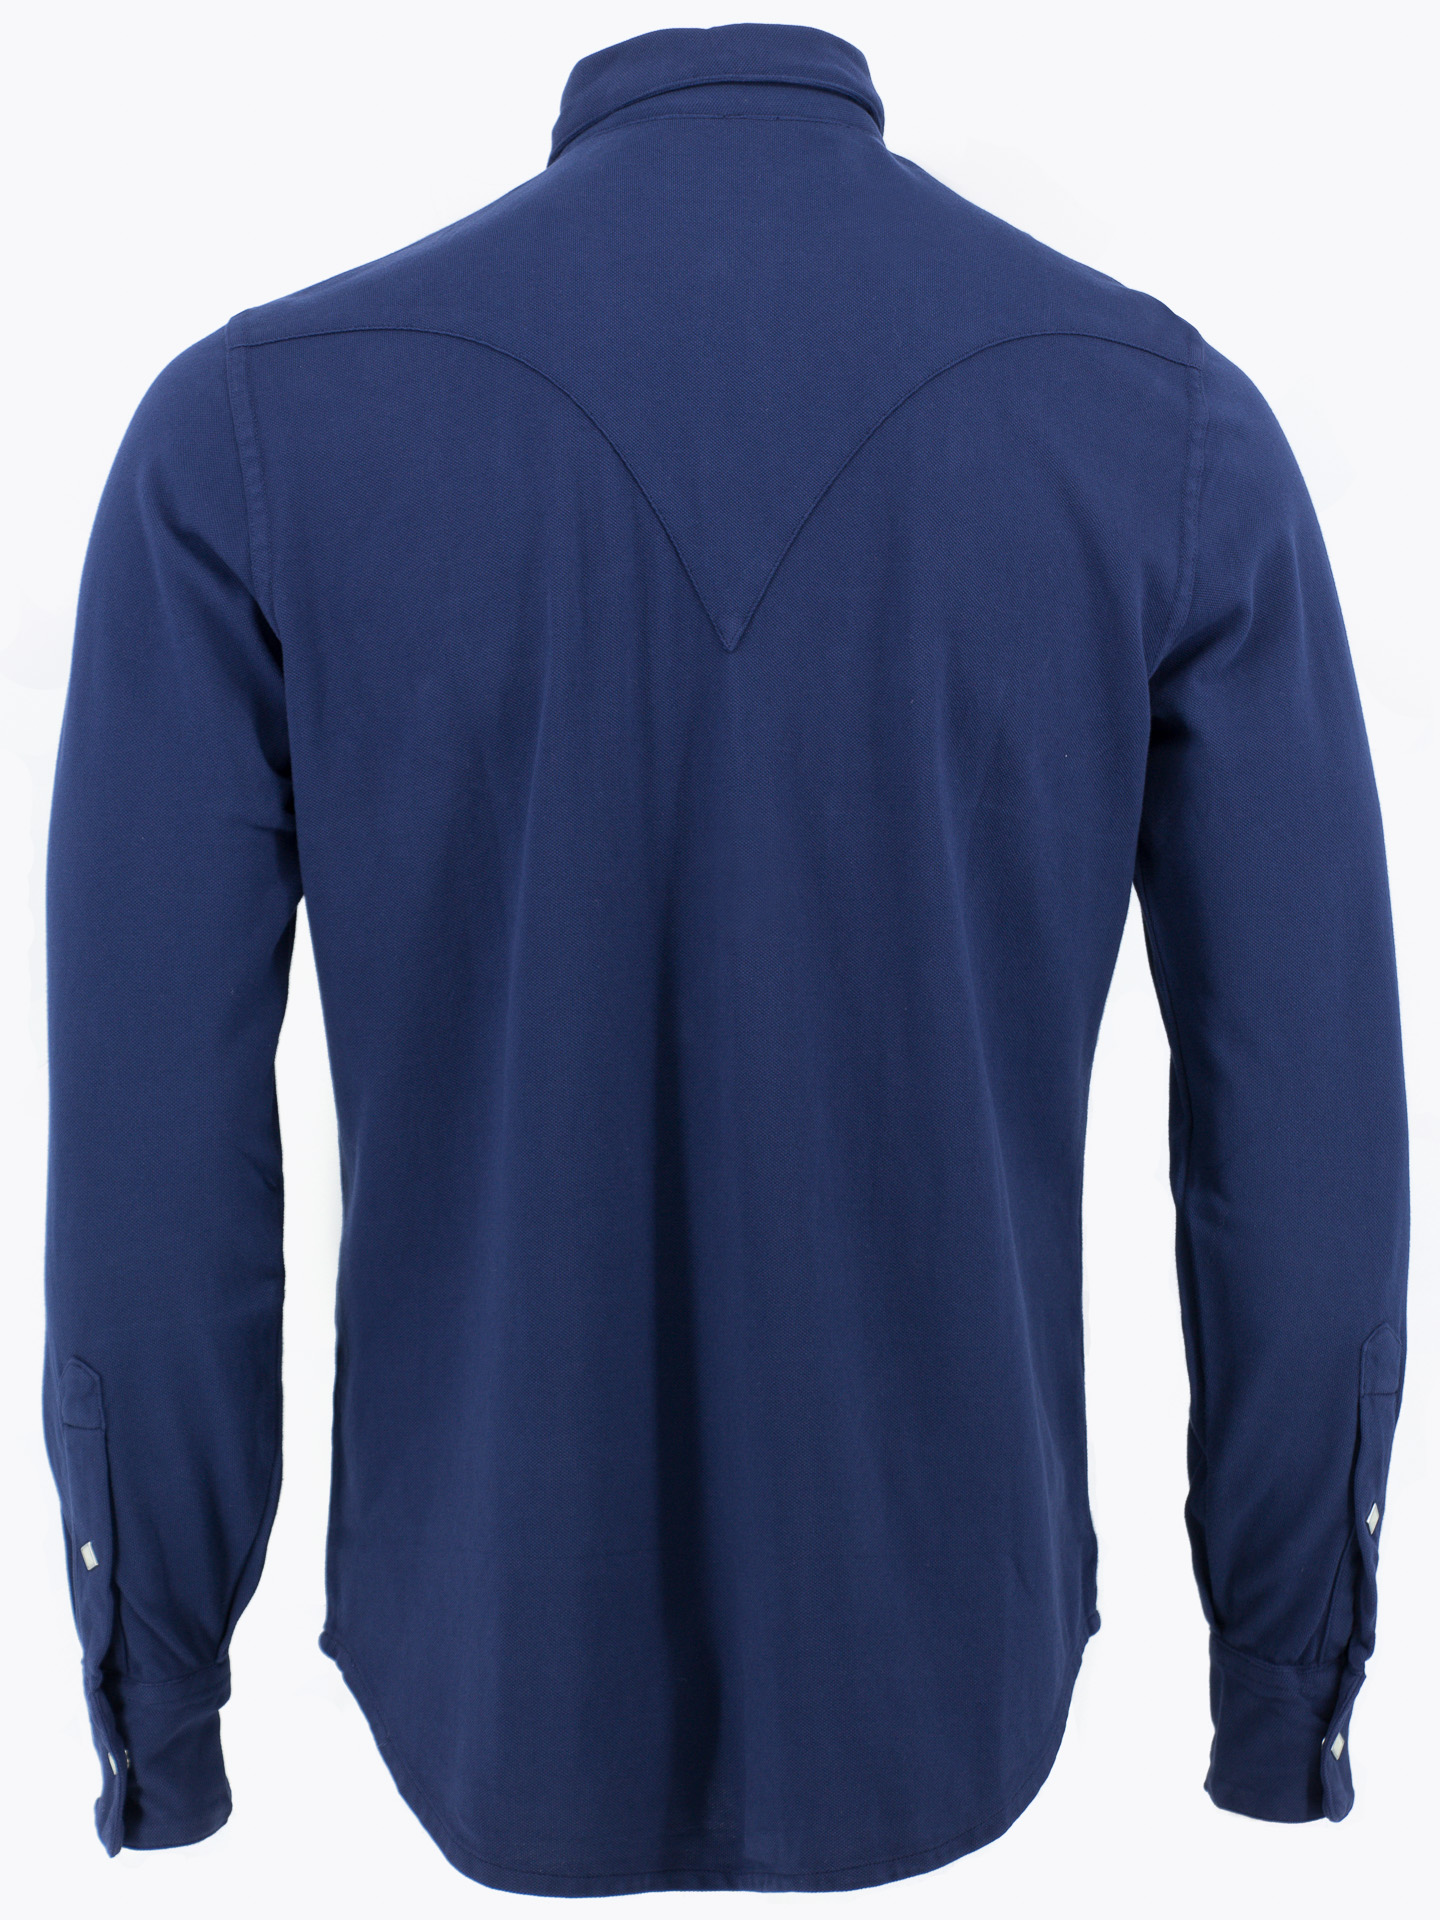 Sawtooth western shirt in a faded indigo blue pique